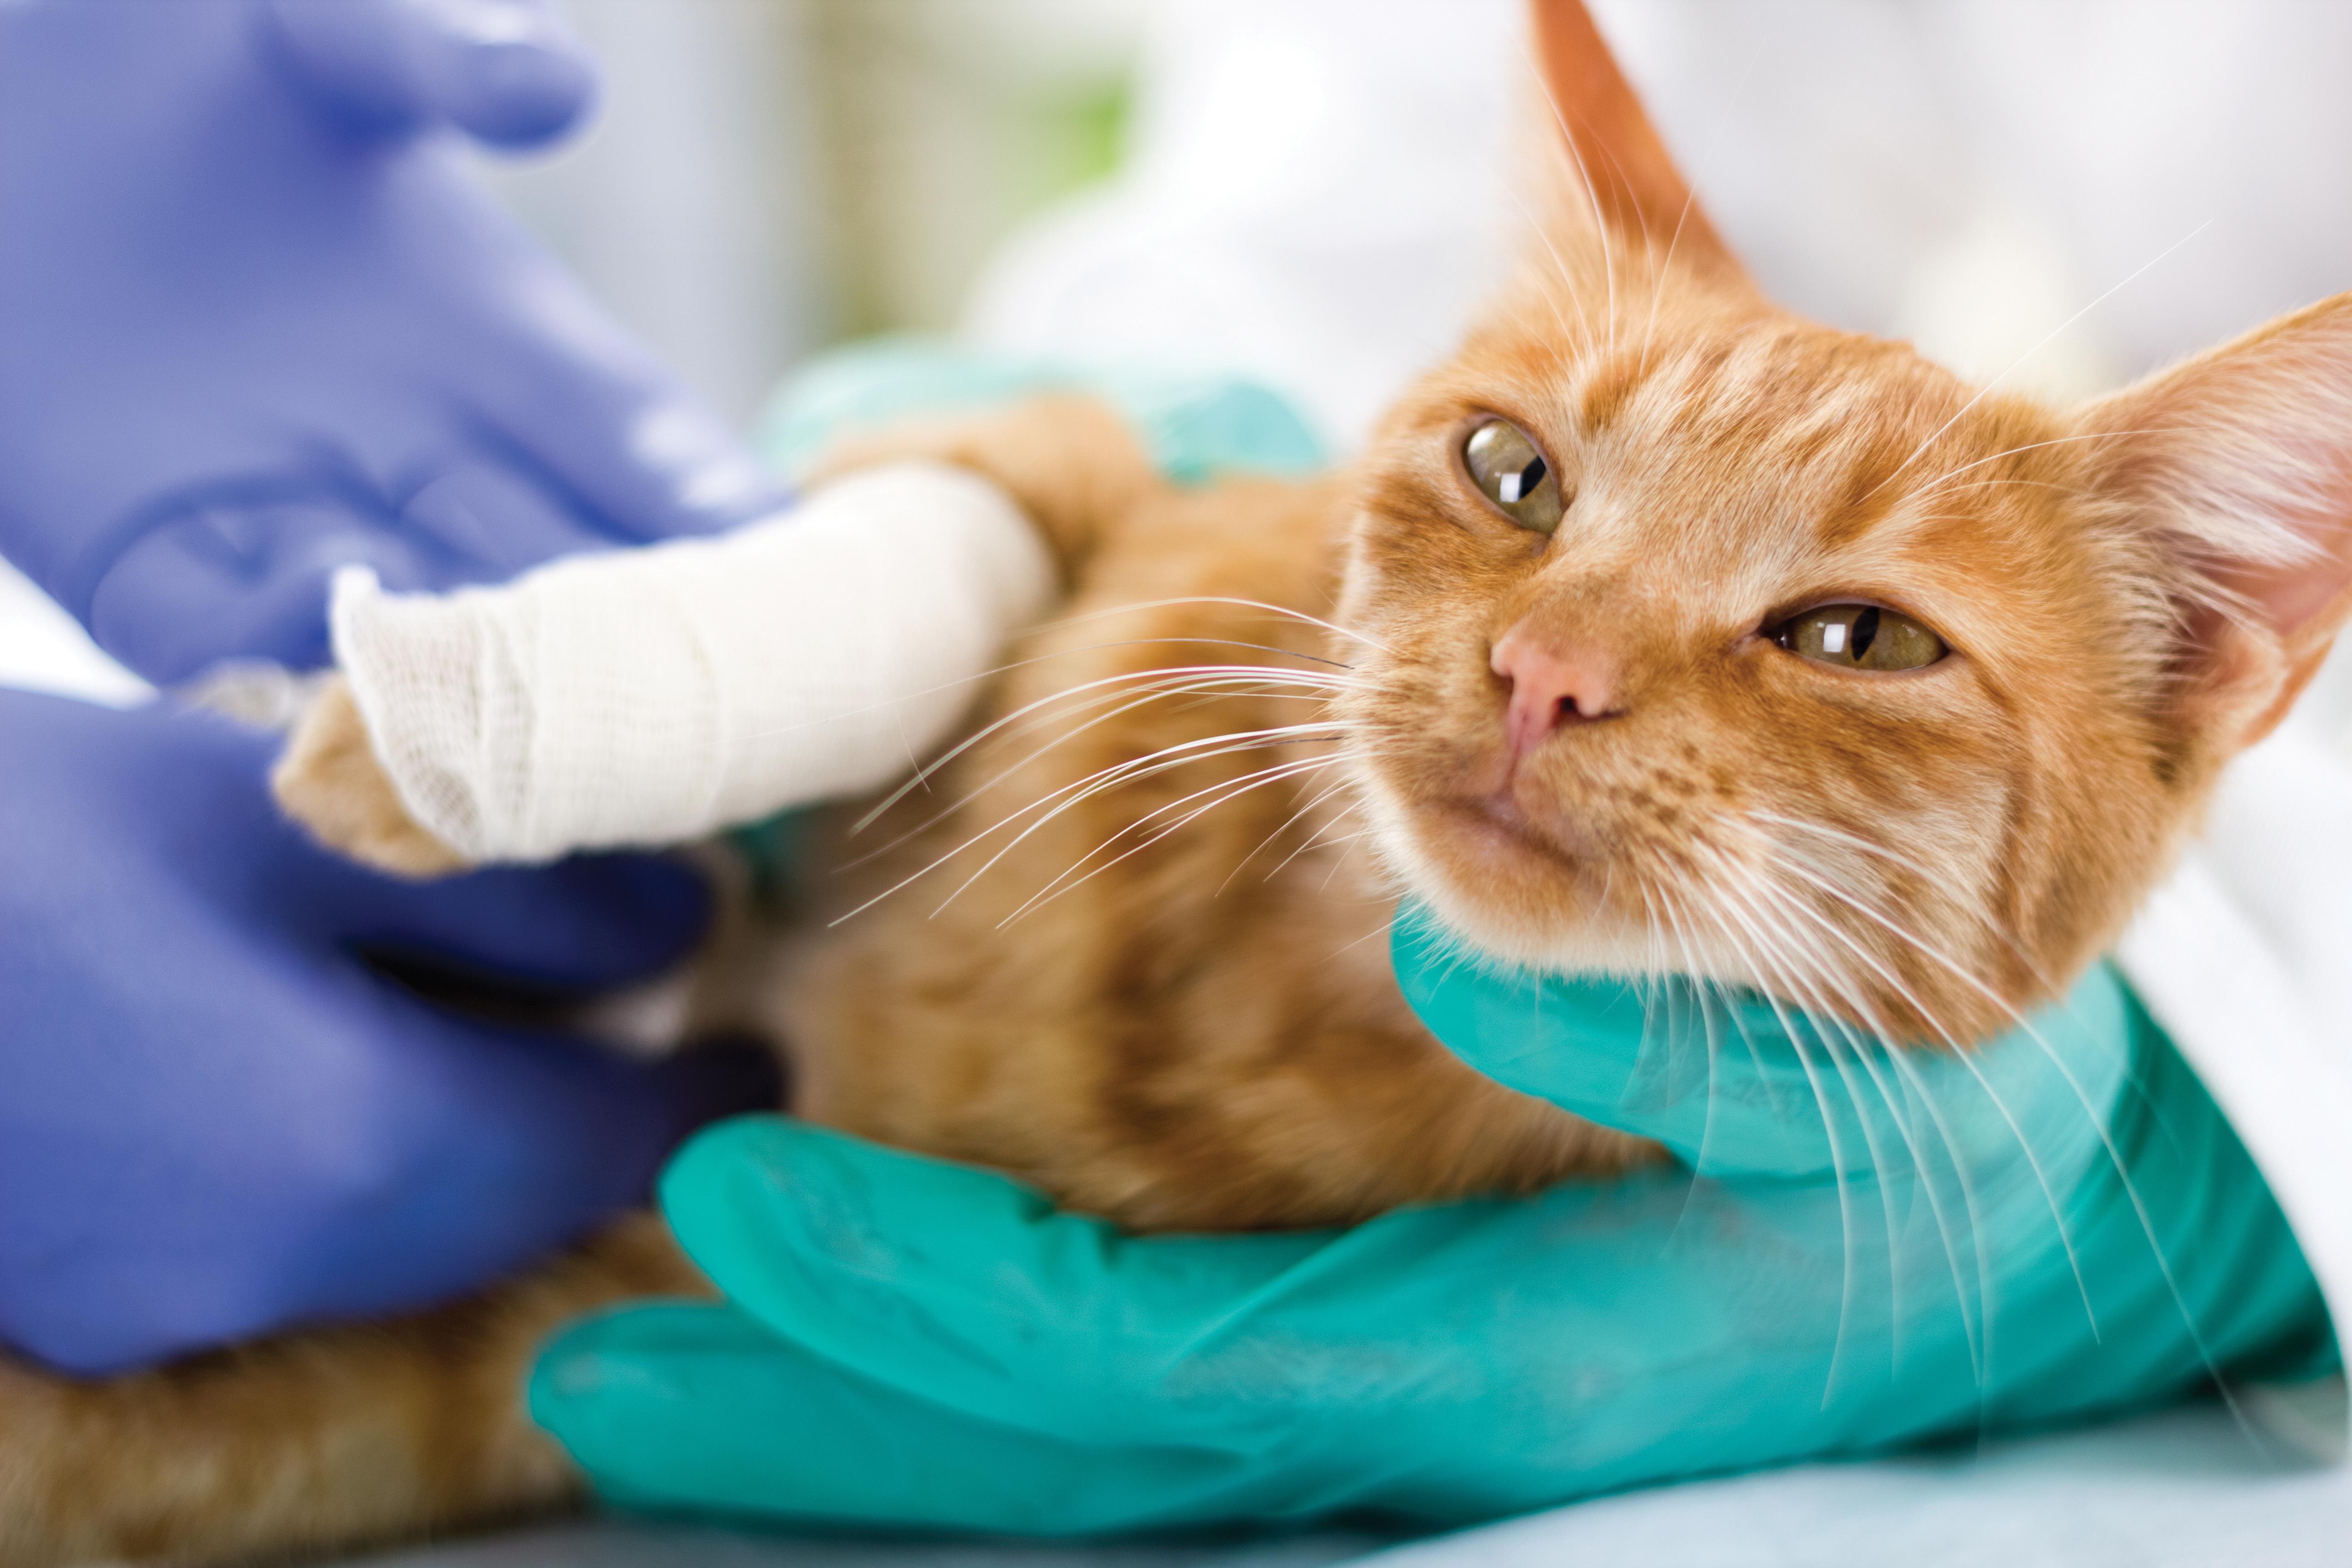 veteriner hekim tarafından muayene edilen ayağı bandajlı kedi